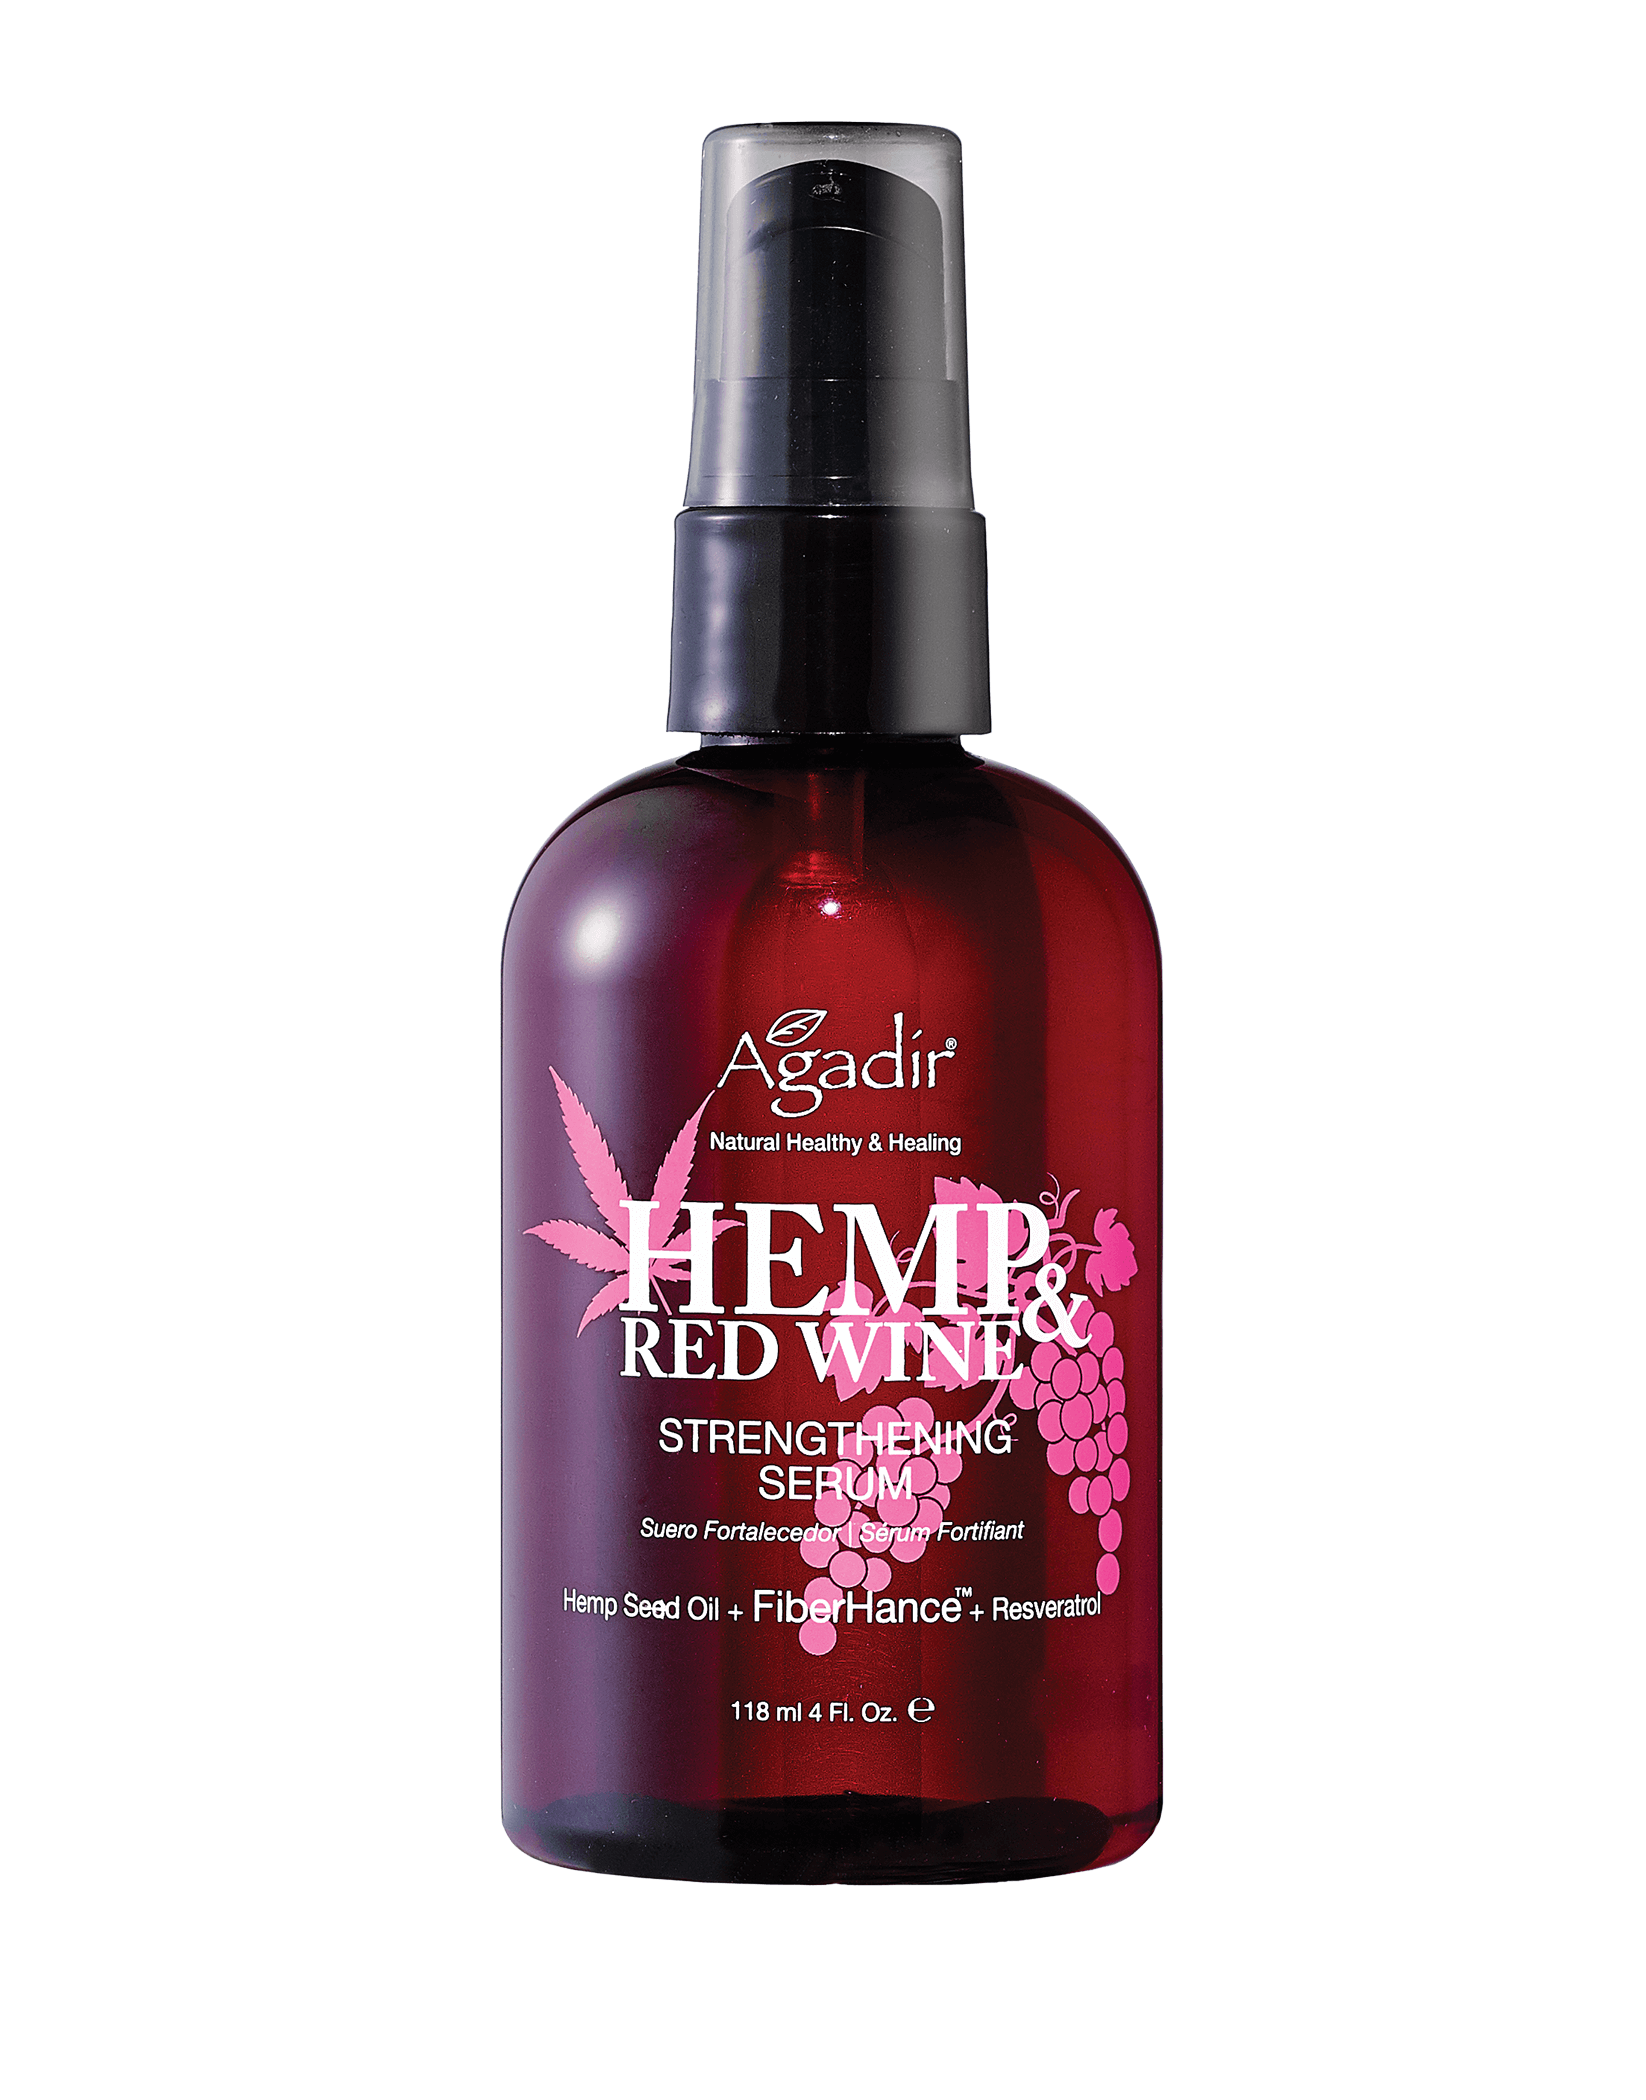 Серум для укрепления волос Hemp & Red Wine Strengthening Serum Pump 118ml